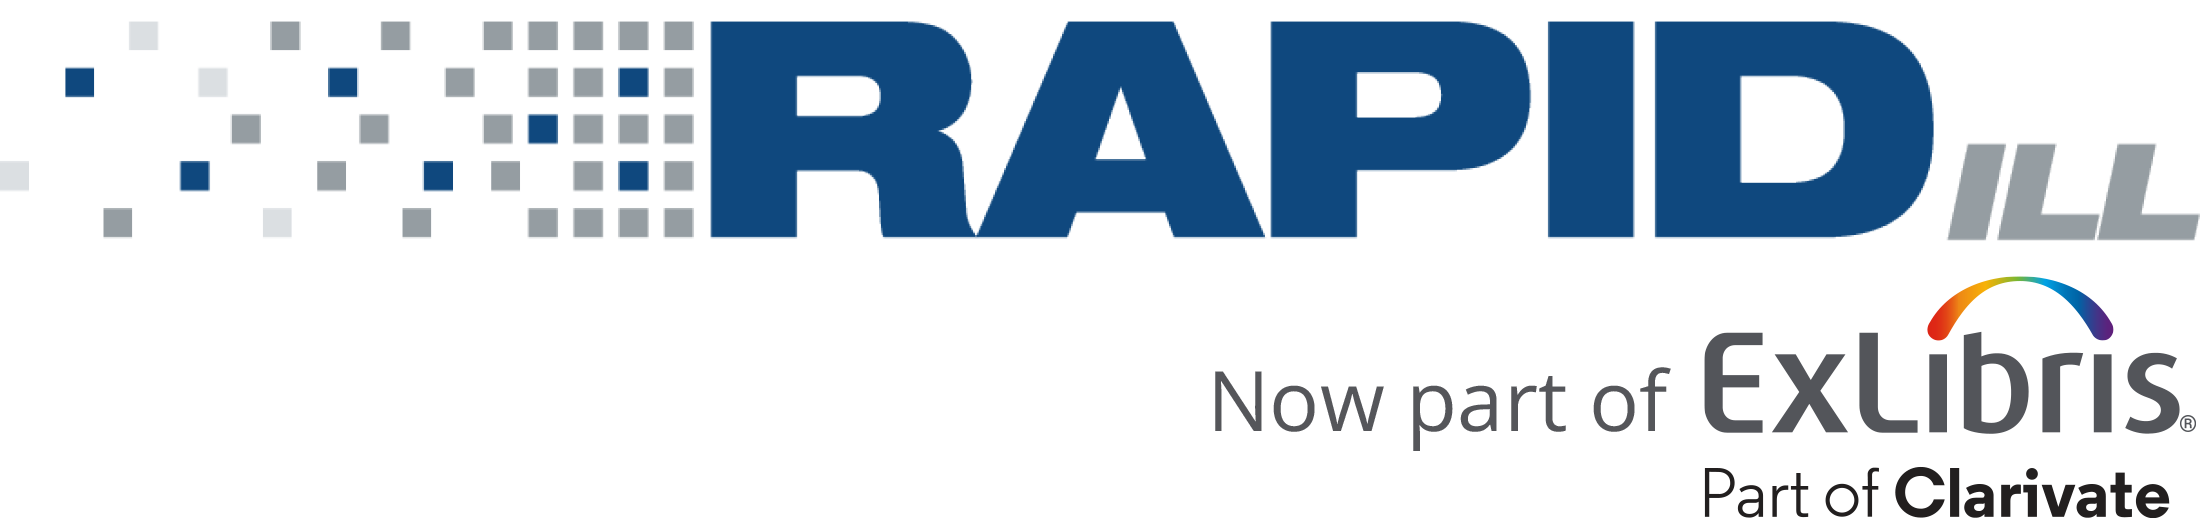 Rapid Logo_27Dec.png